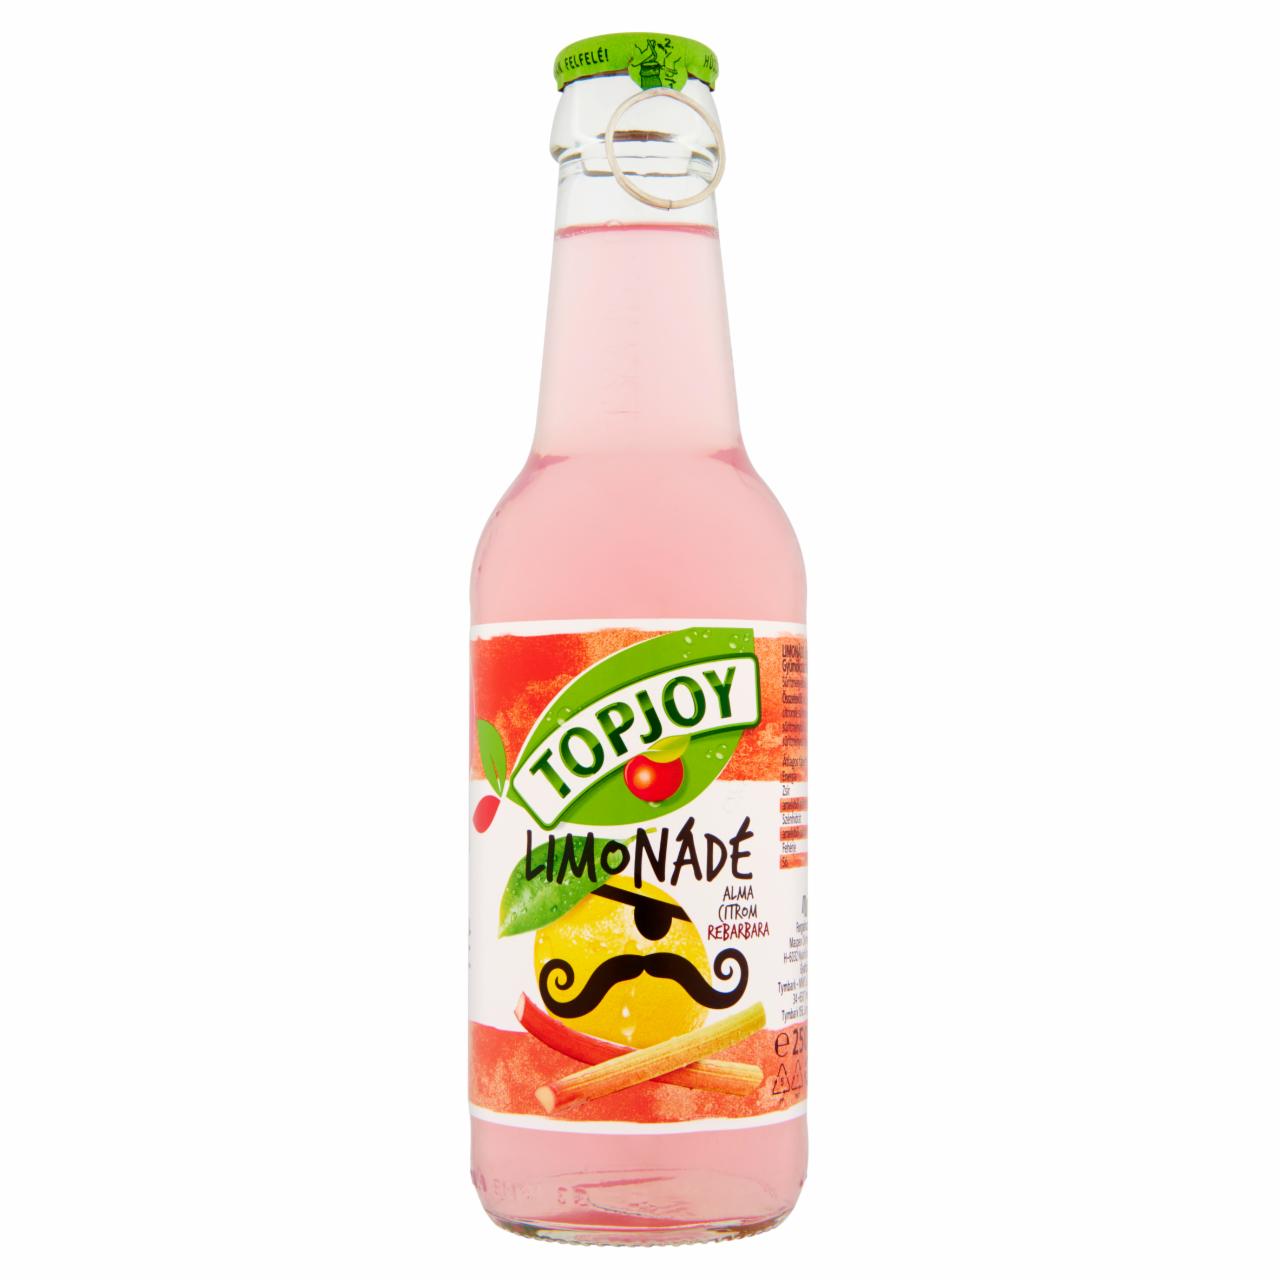 Képek - Topjoy Limonádé alma-citrom-rebarbara ital 250 ml